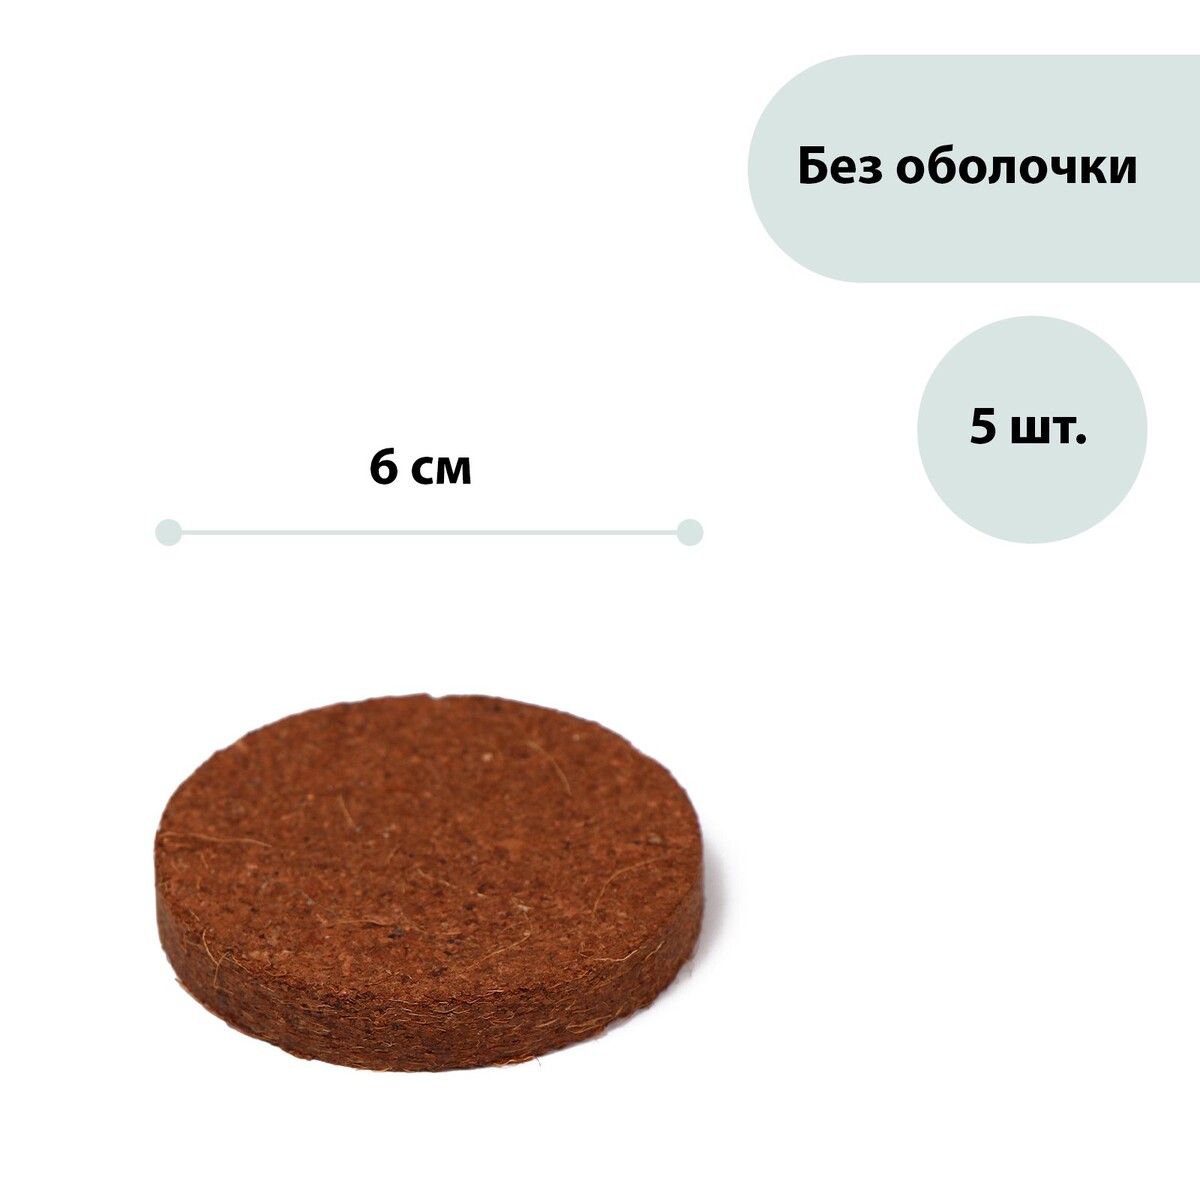 Таблетки кокосовые, d = 6 см, набор 5 шт., без оболочки, greengo аллохол таблетки 10